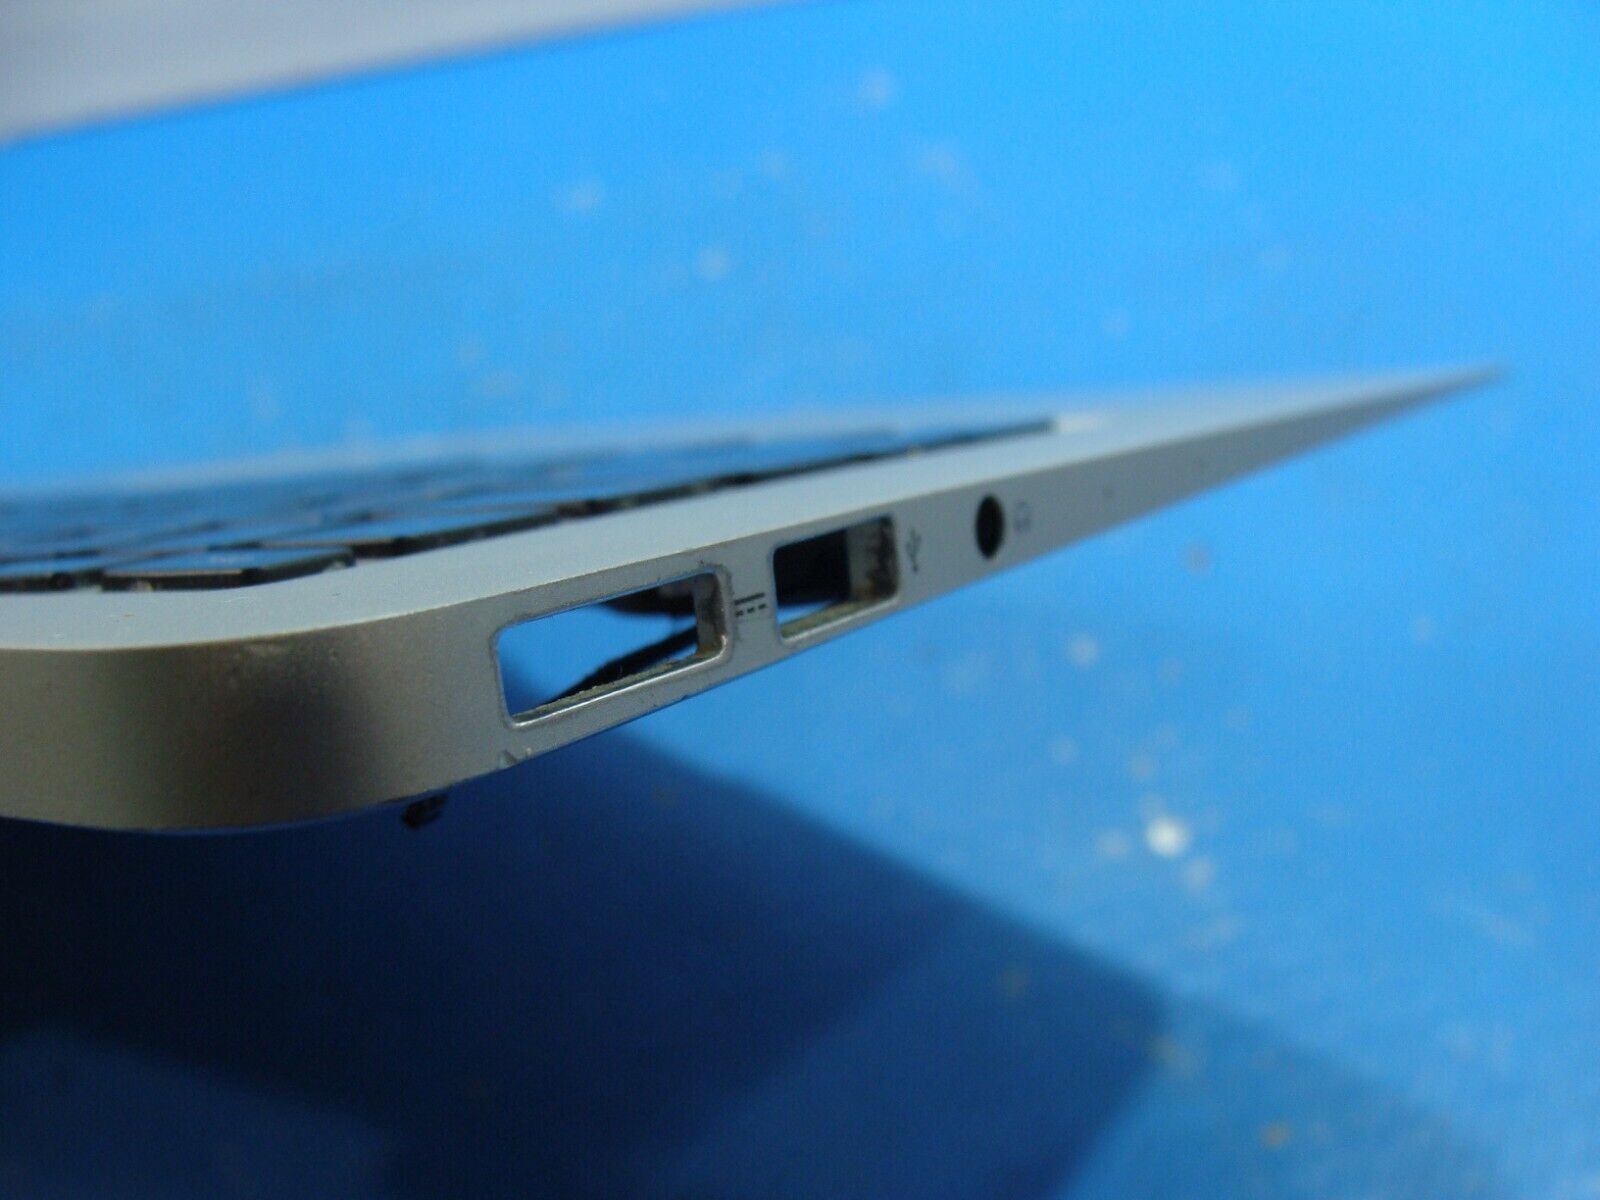 MacBook Air A1466 Early 2014 MD760LL/B 13